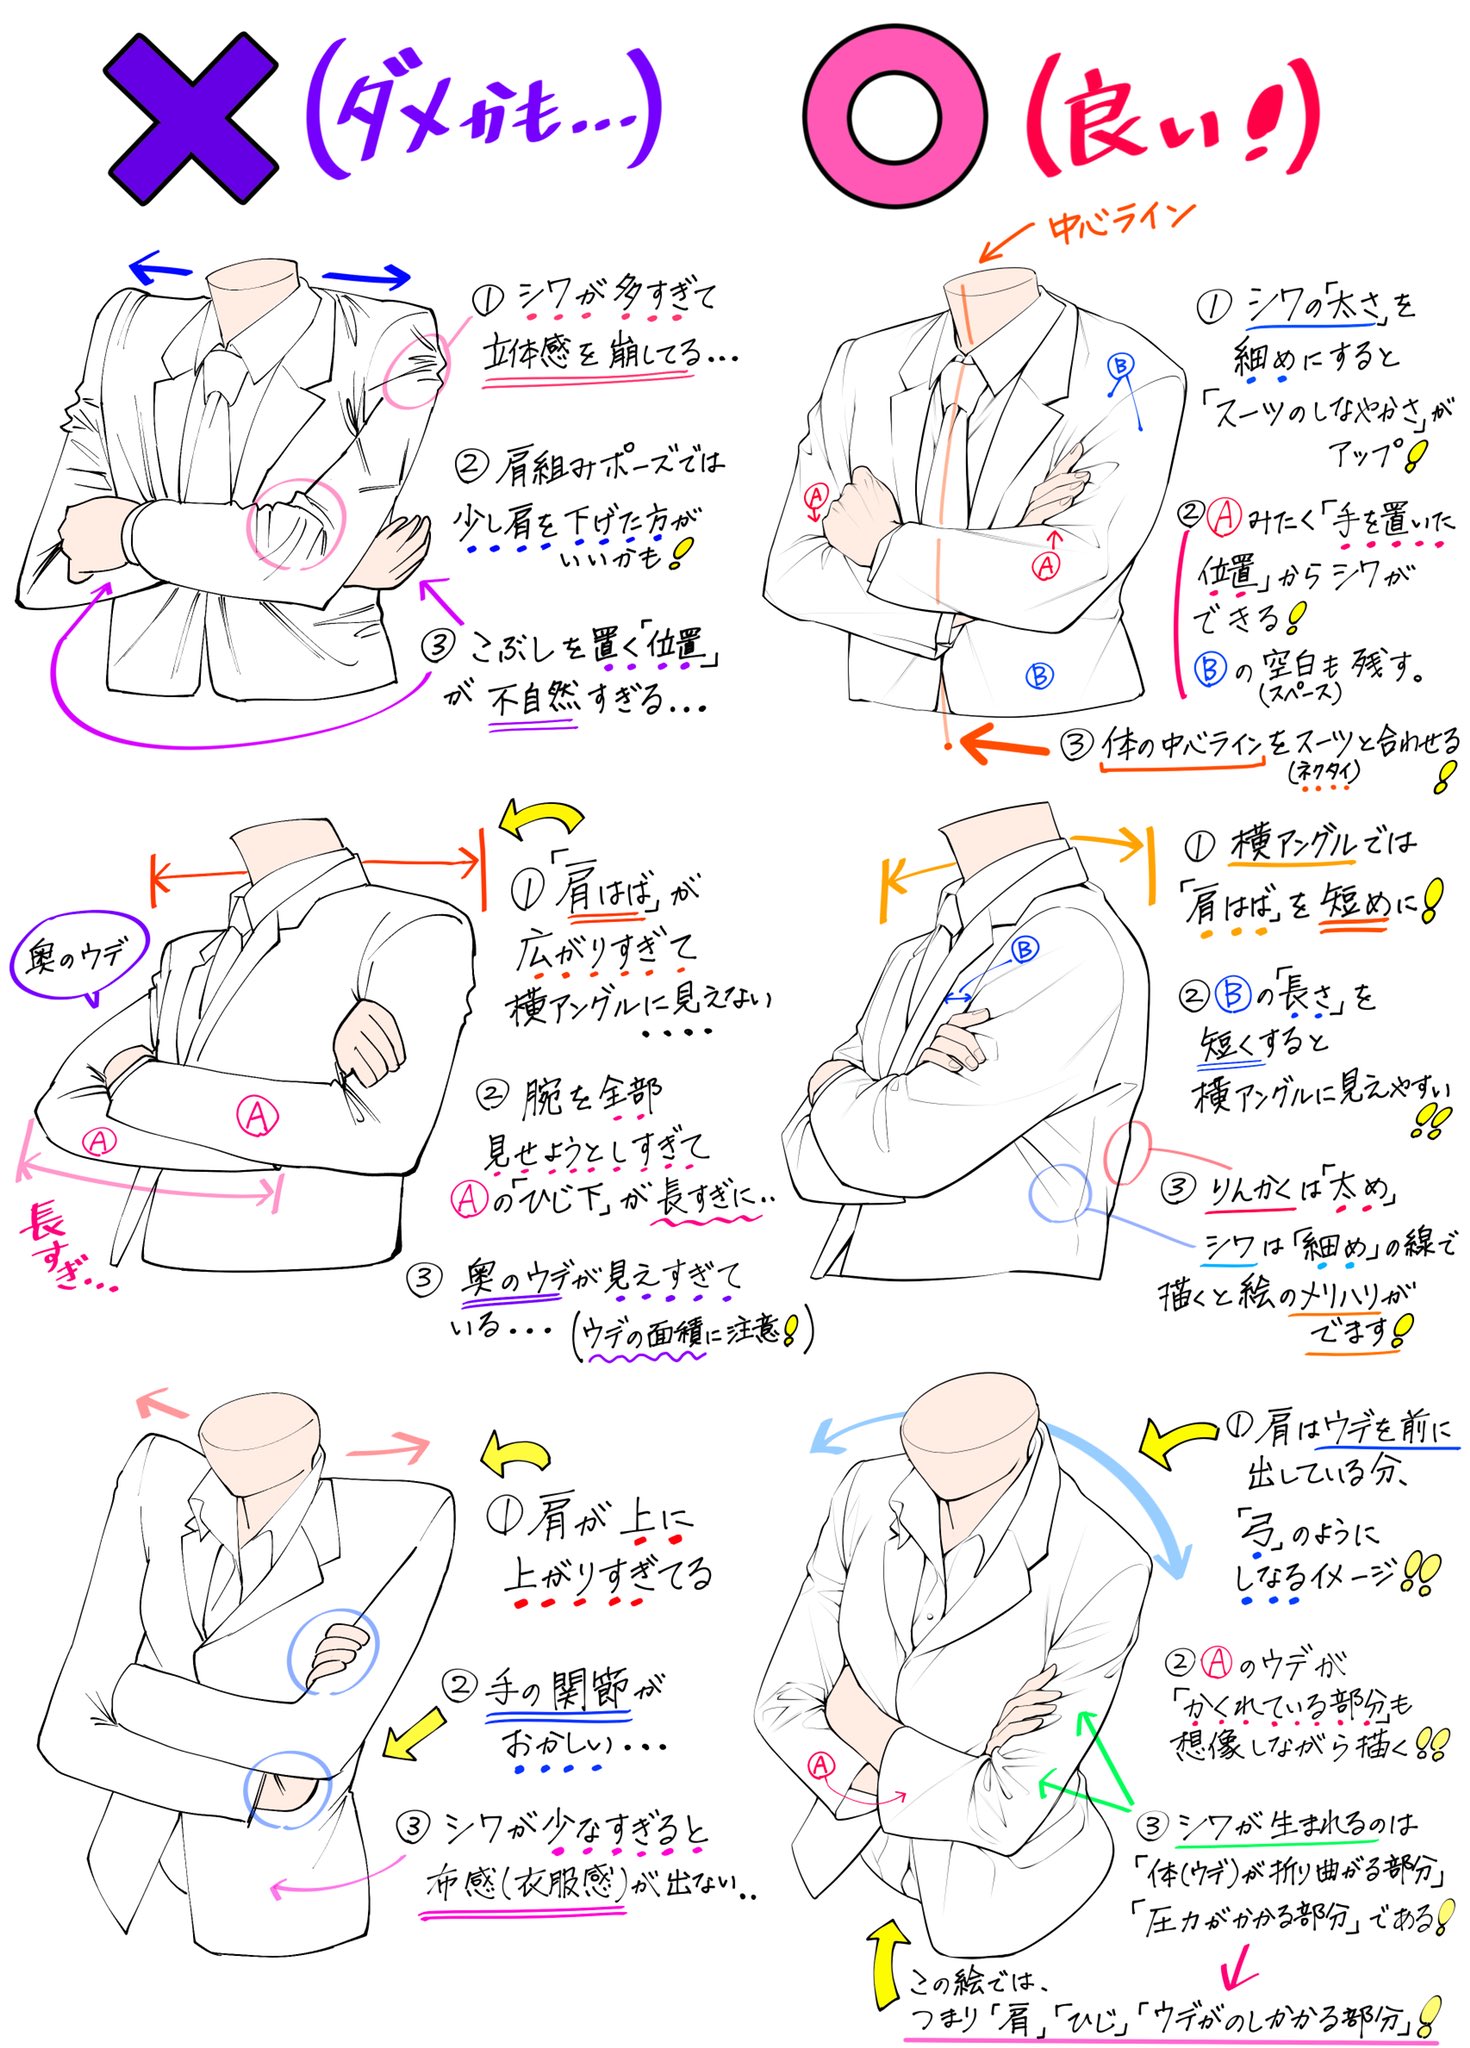 吉村拓也 イラスト講座 ウデ組みポーズの描き方 素肌タイプと服タイプ を描くときの ダメなこと と 良いこと